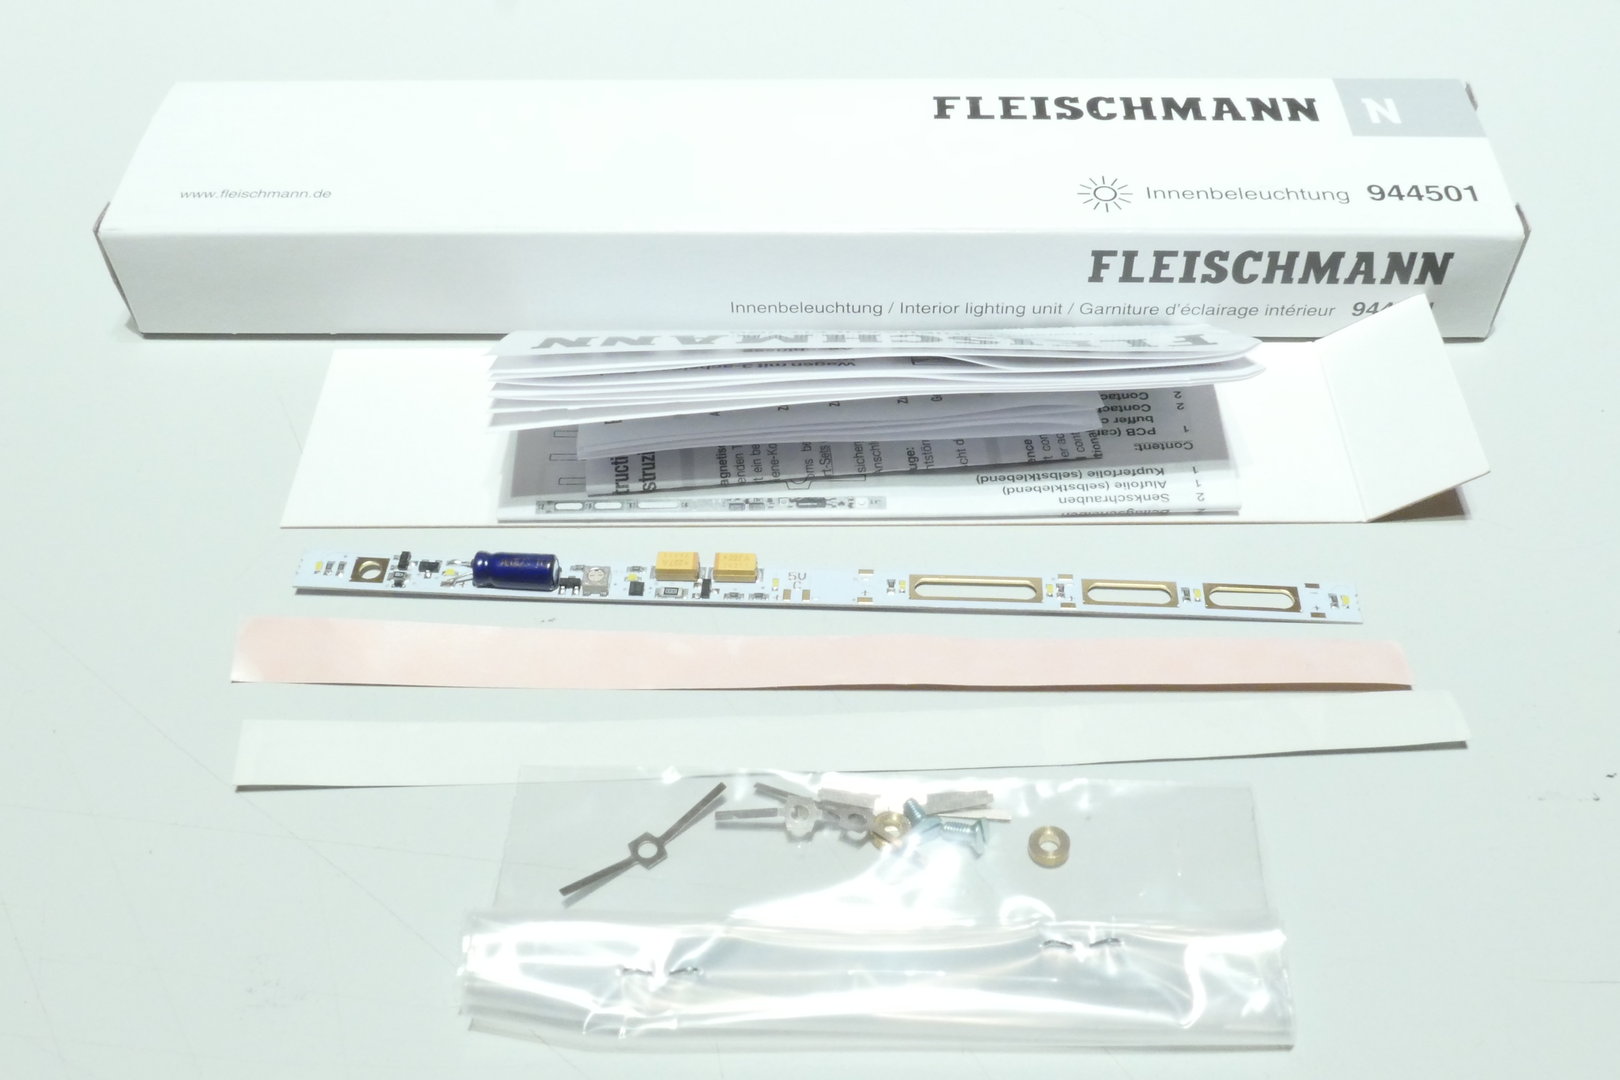 Fleischmann 944501 